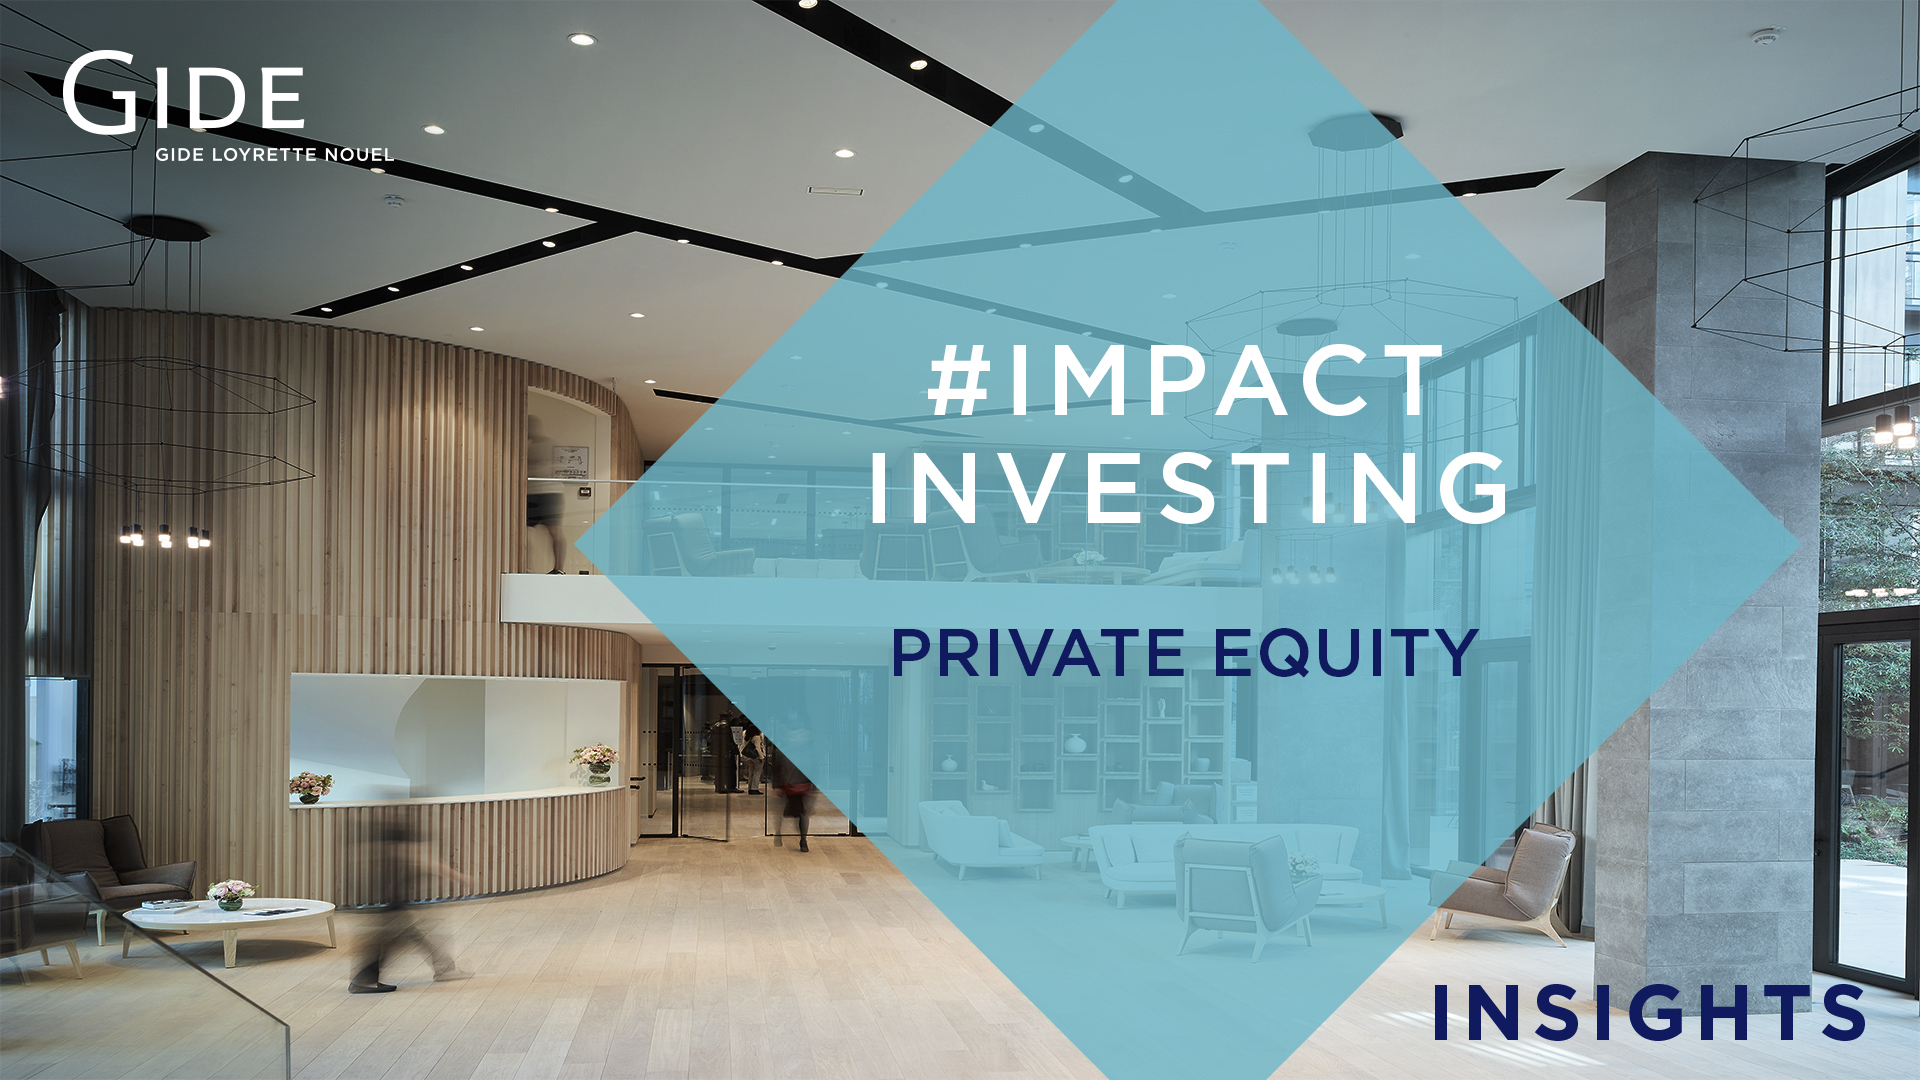 Gide Insights | Private Equity & Impact Investing, un modèle à réinventer ? | March 2019